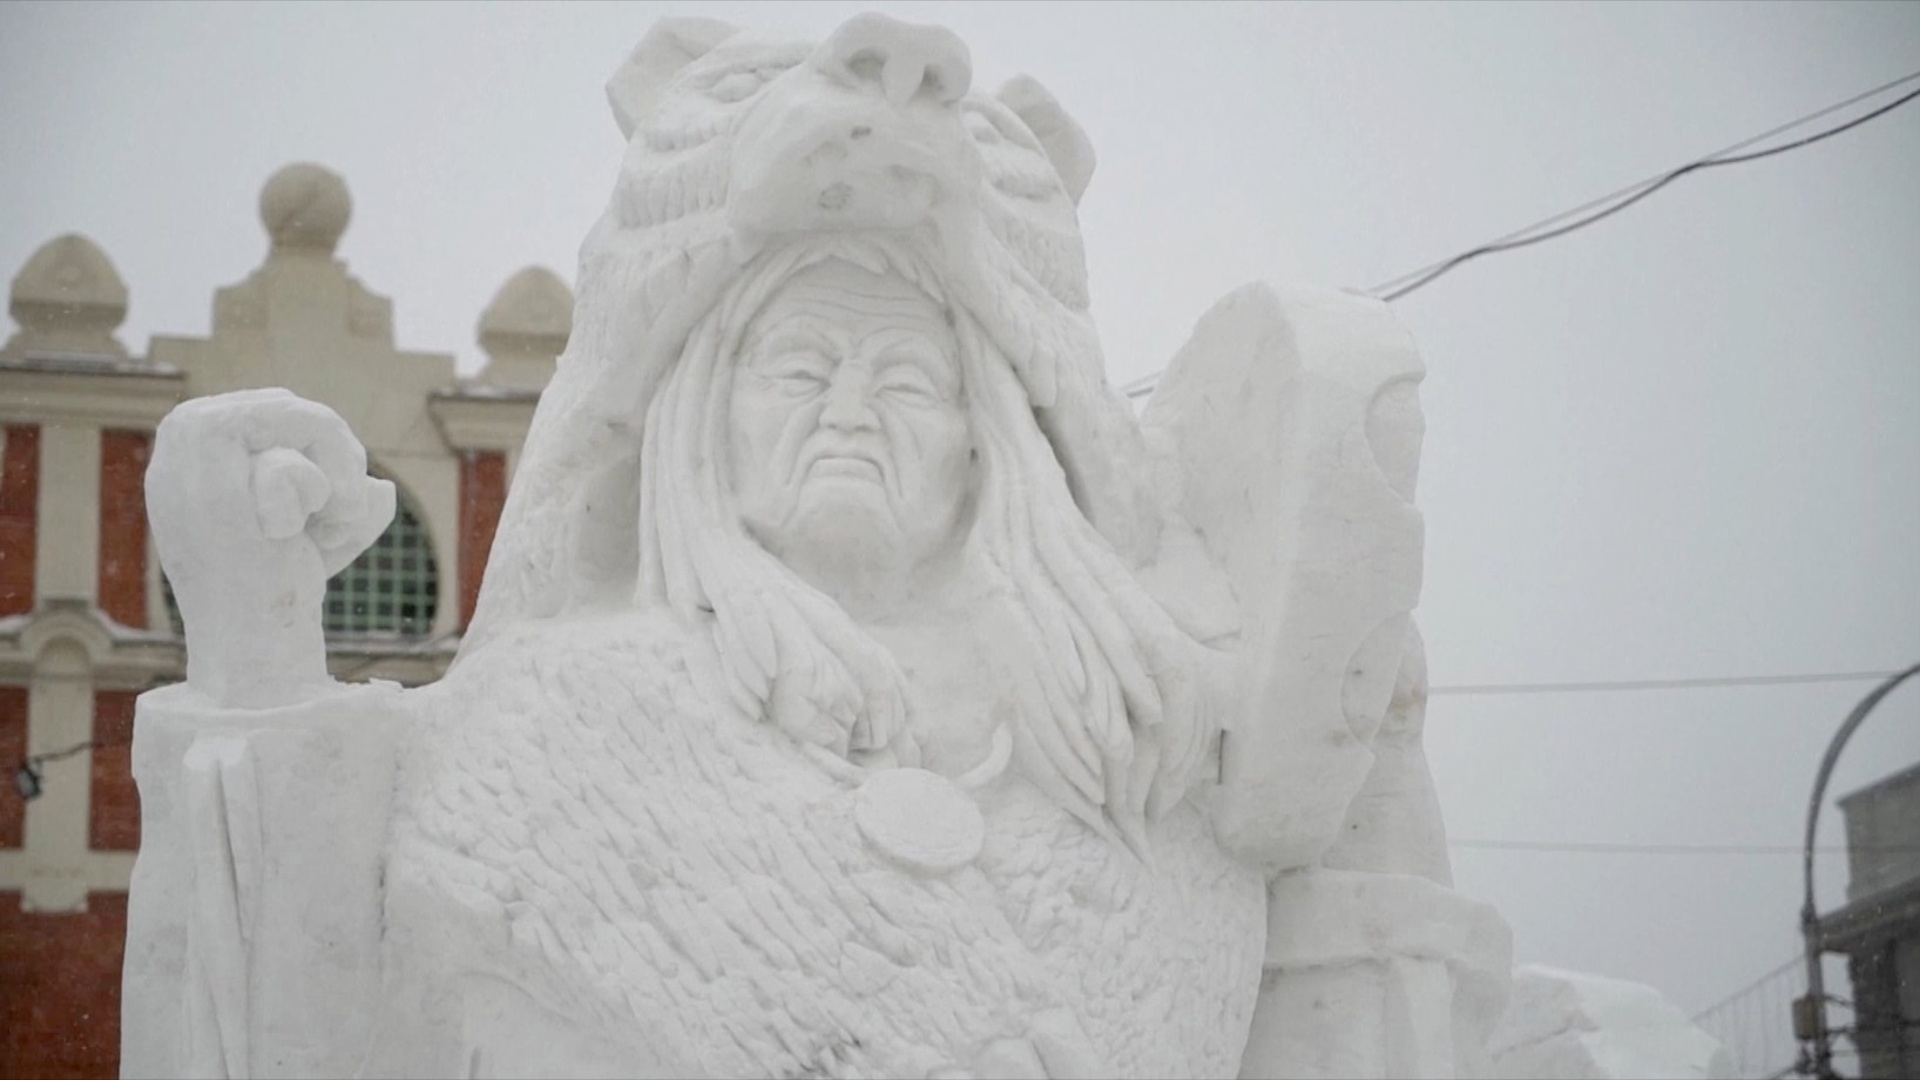 В Сибири выбрали победителей фестиваля снежной скульптуры